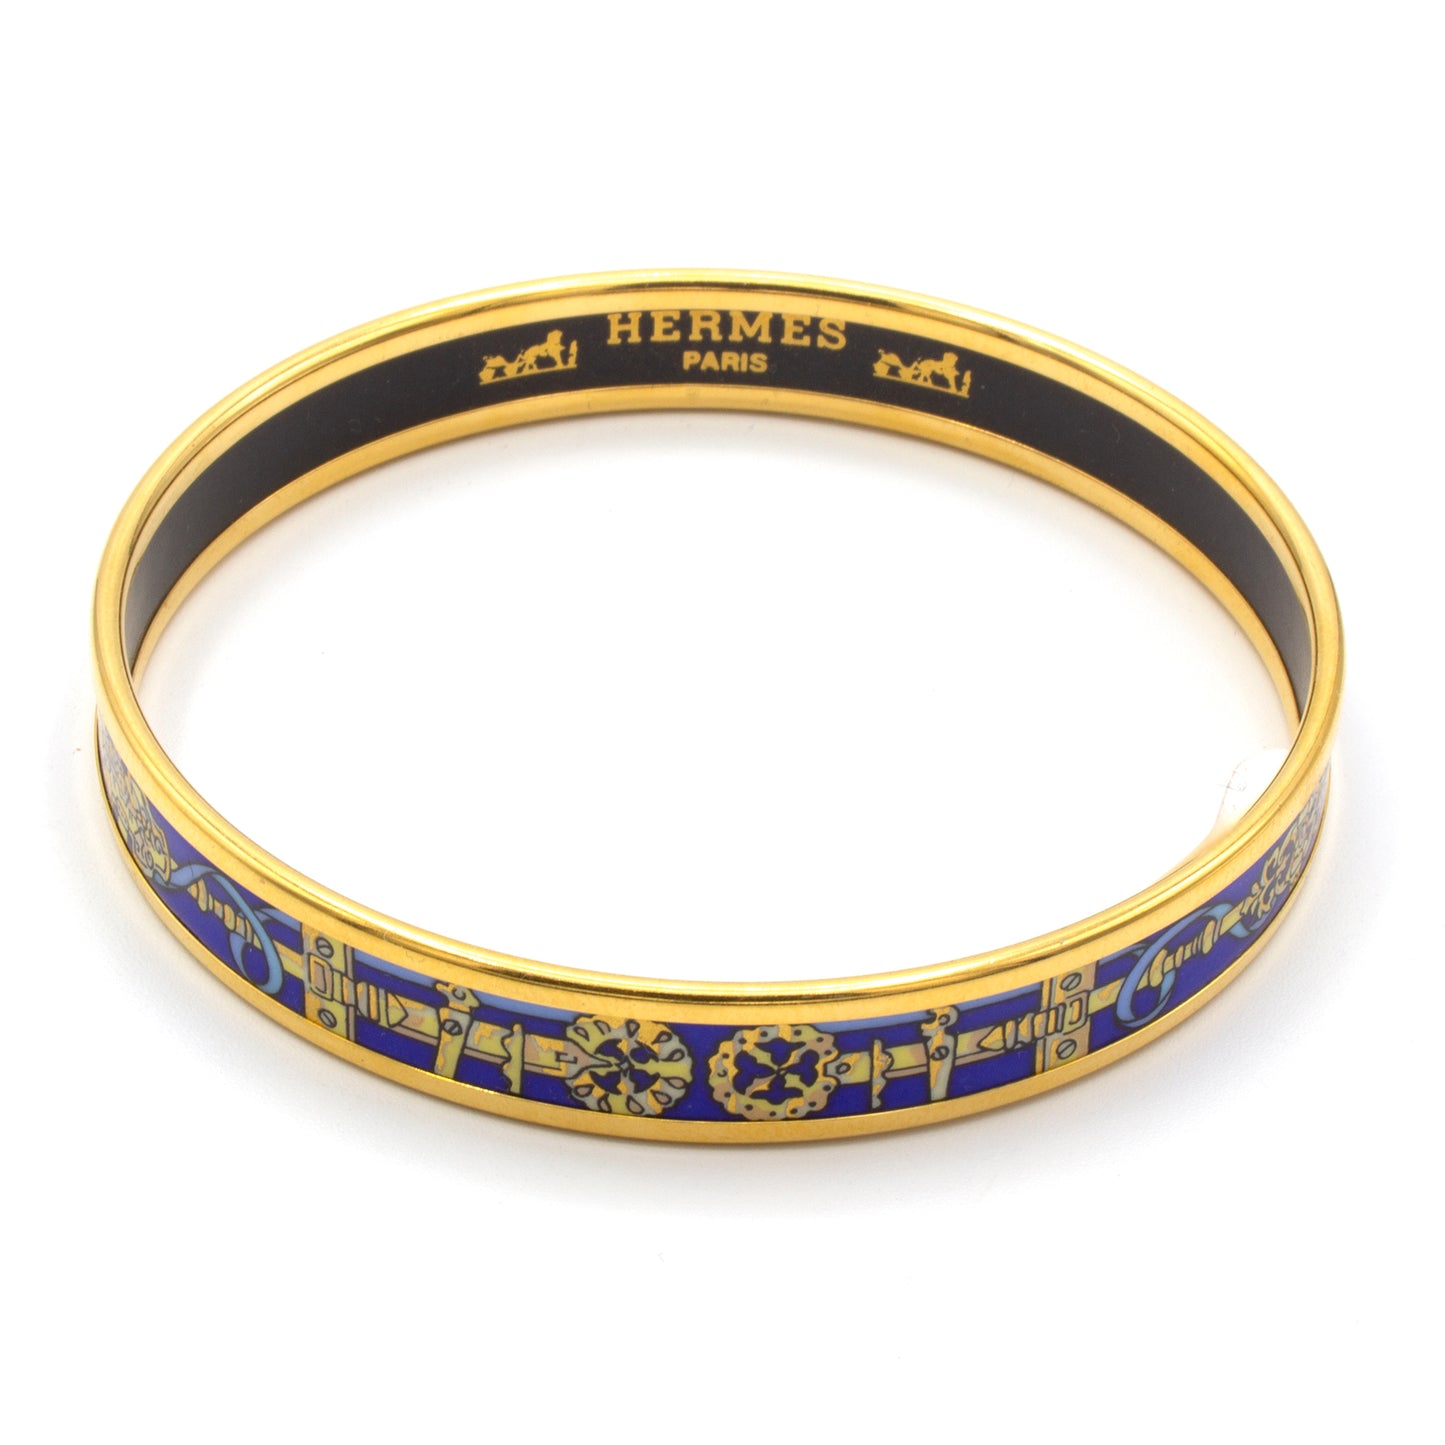 Hermès enamel bracelet